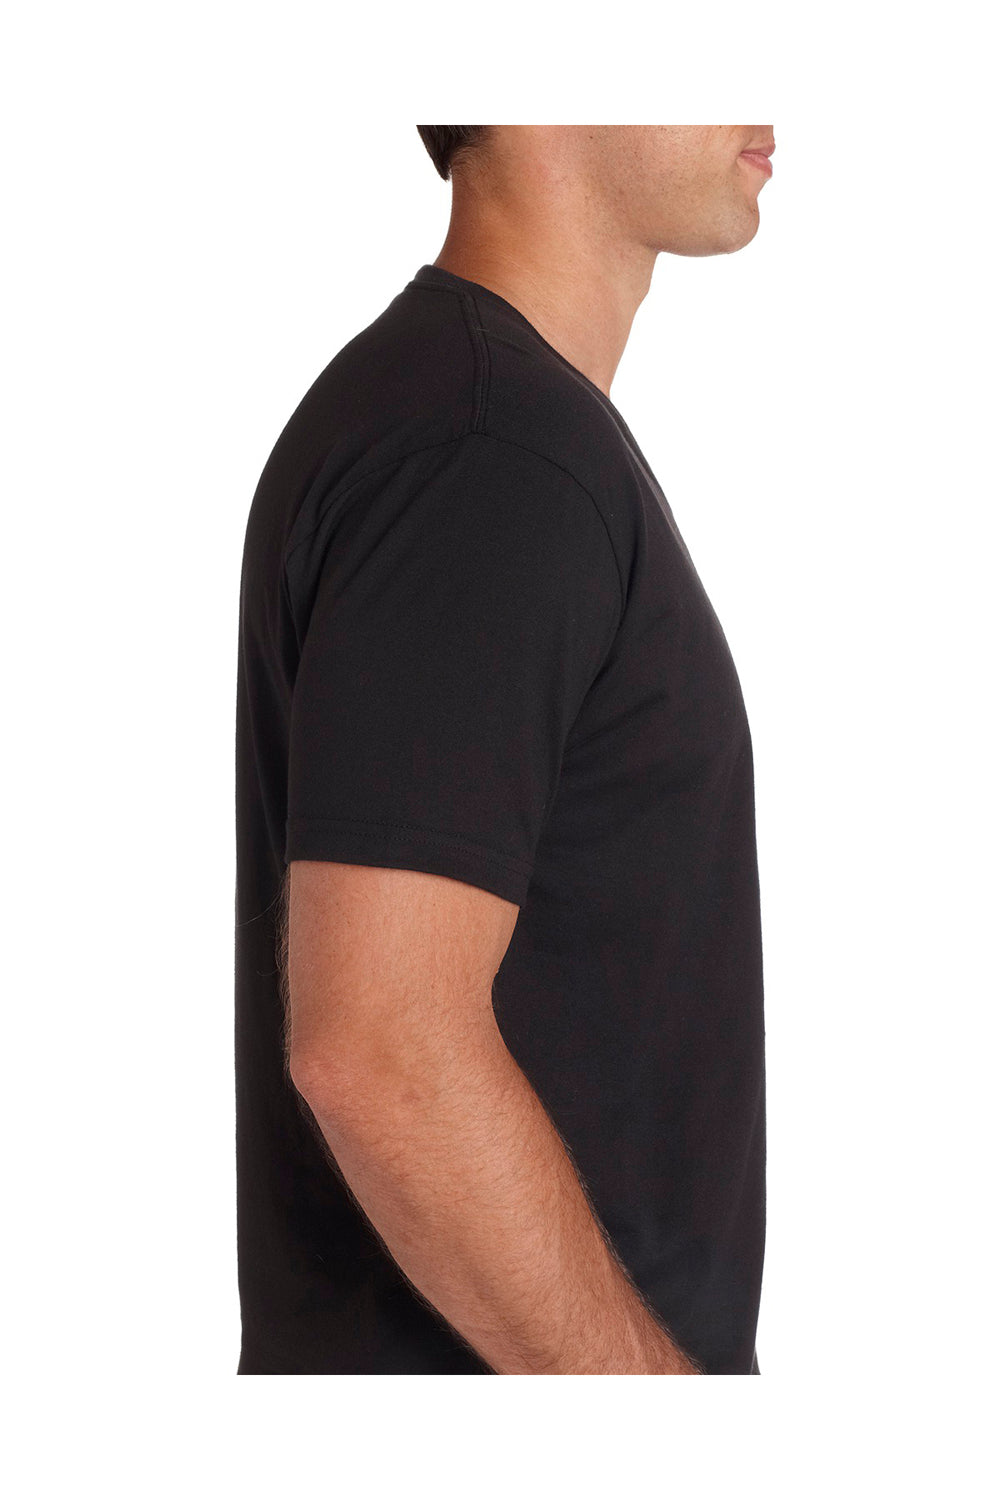 Next Level N3200 Mens Fine Jersey Short Sleeve V-Neck T-Shirt Black Side